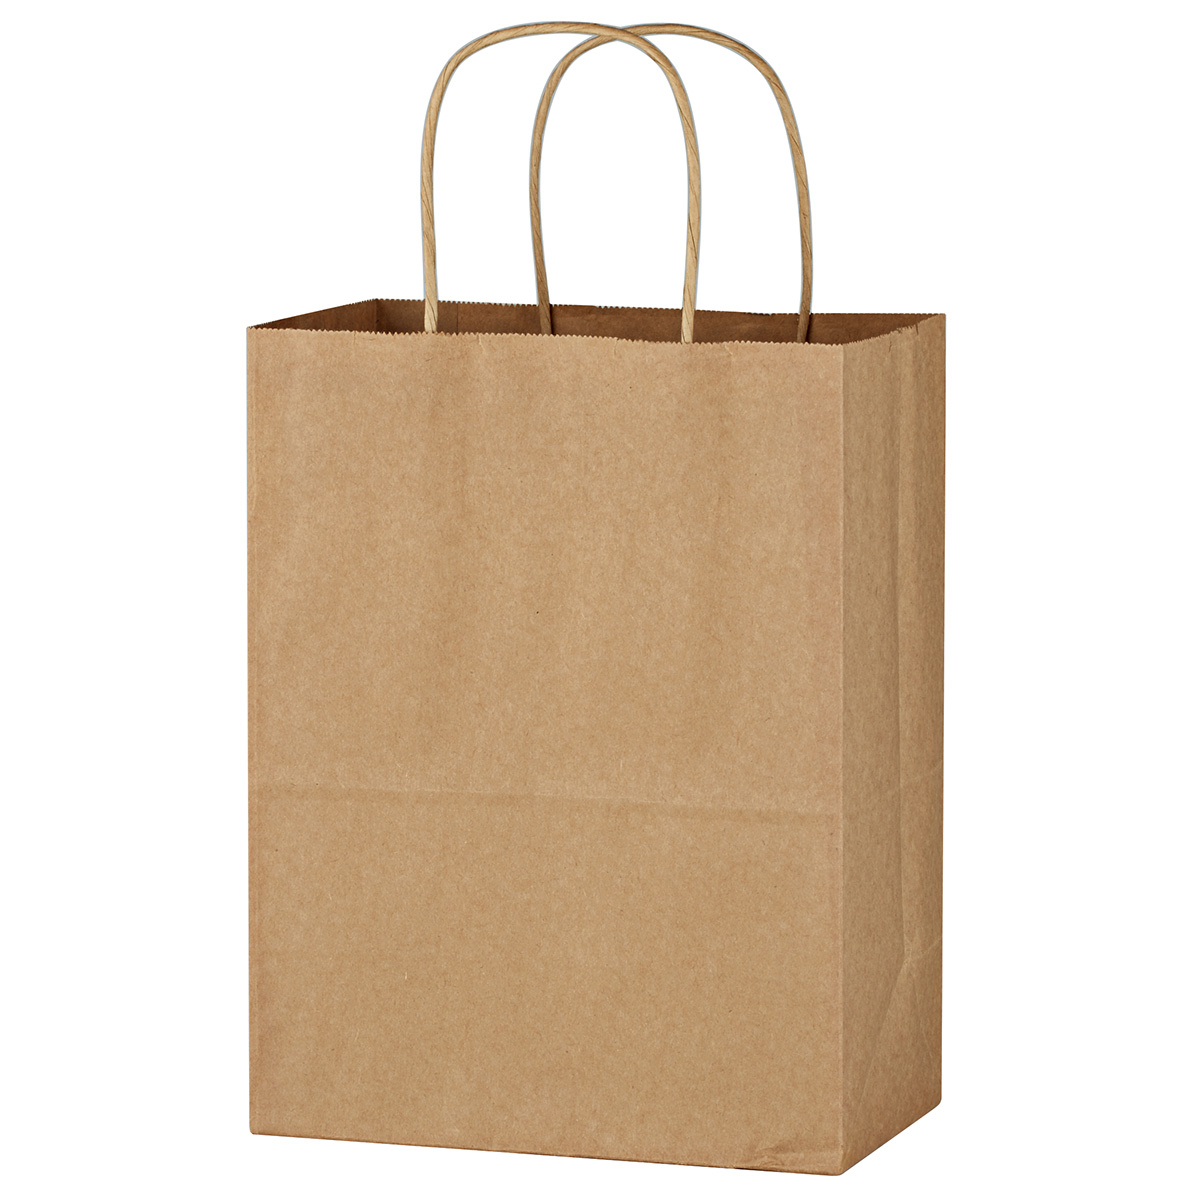 3901-kraft-paper-brown-shopping-bag-8-x-10-1-4-hit-promotional